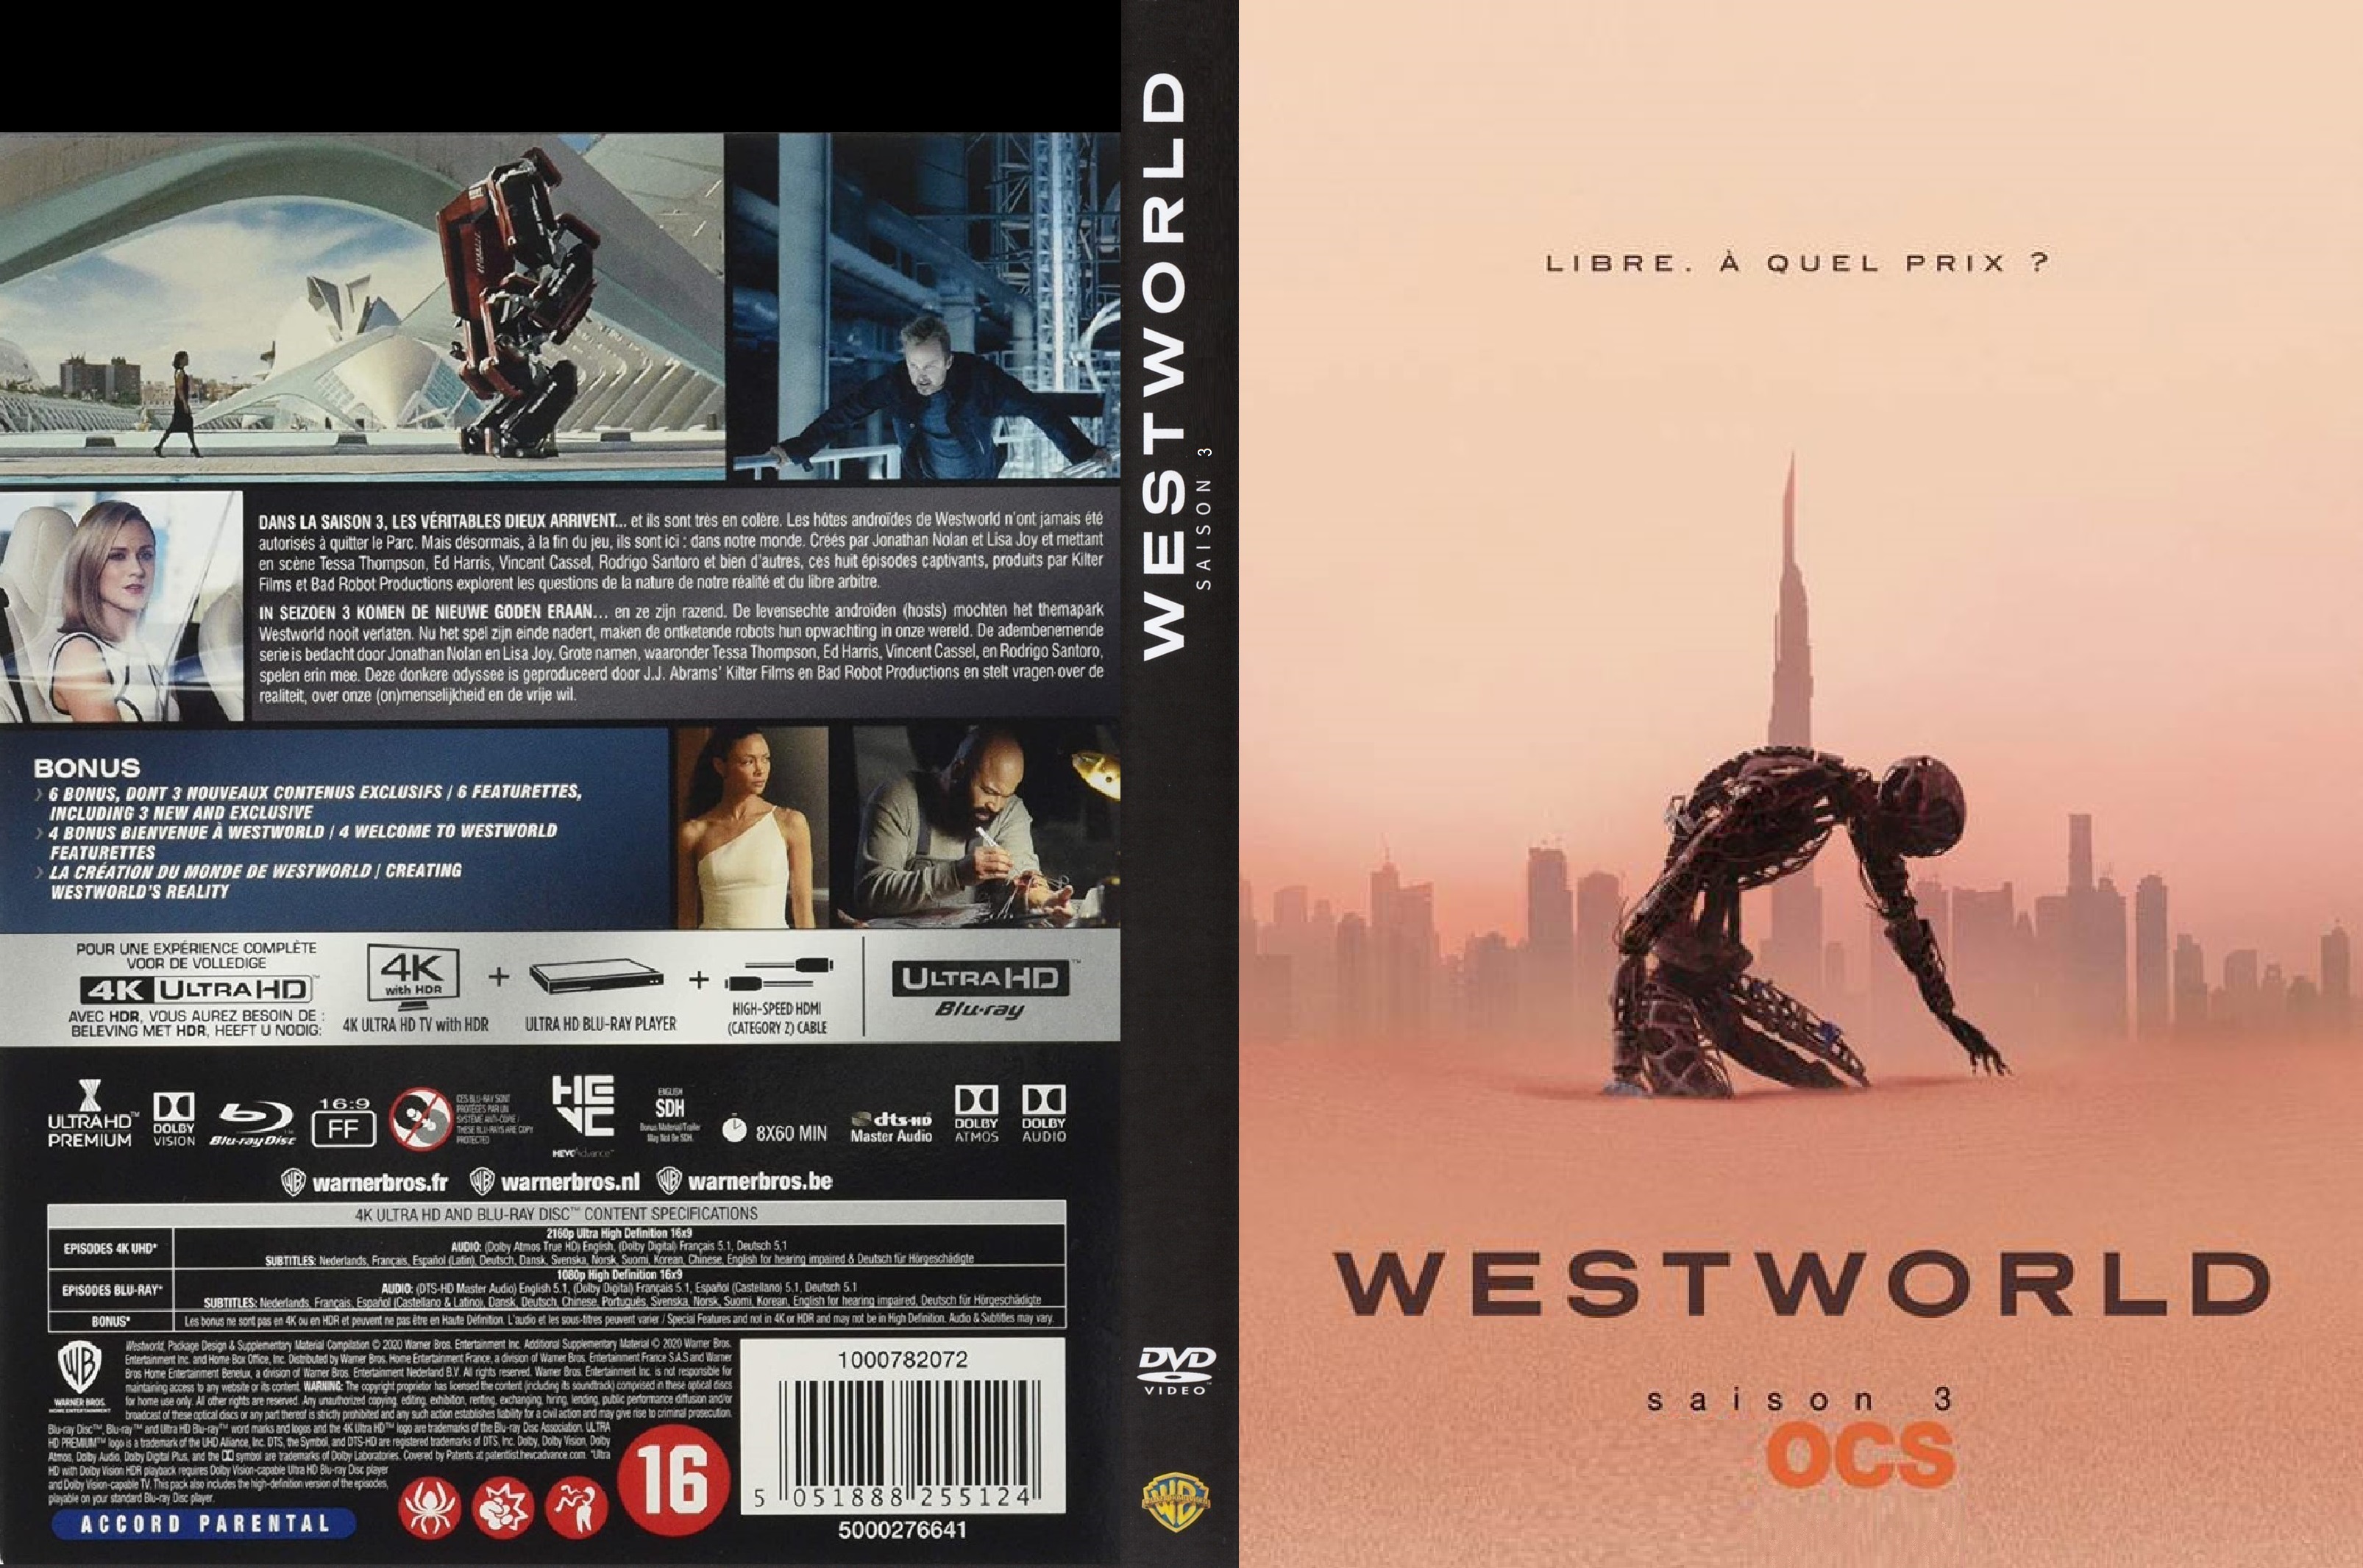 Jaquette DVD Westworld saison 3 custom